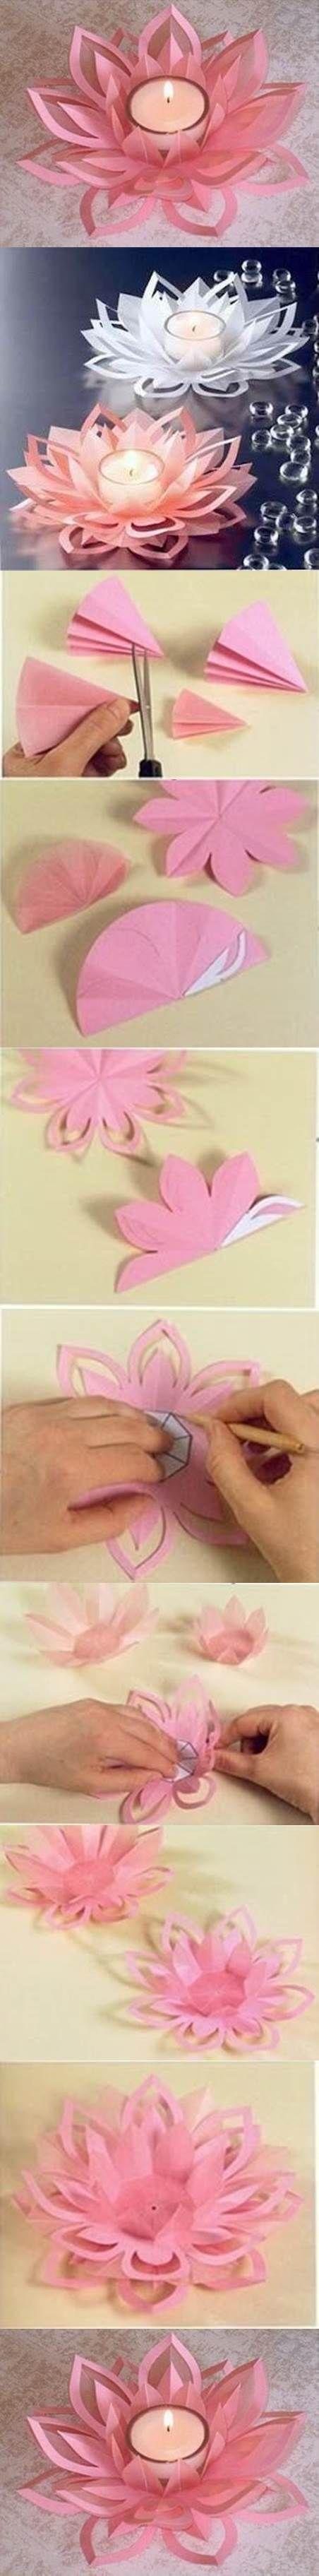 Wedding - DIY Paper Lotus Candlestick